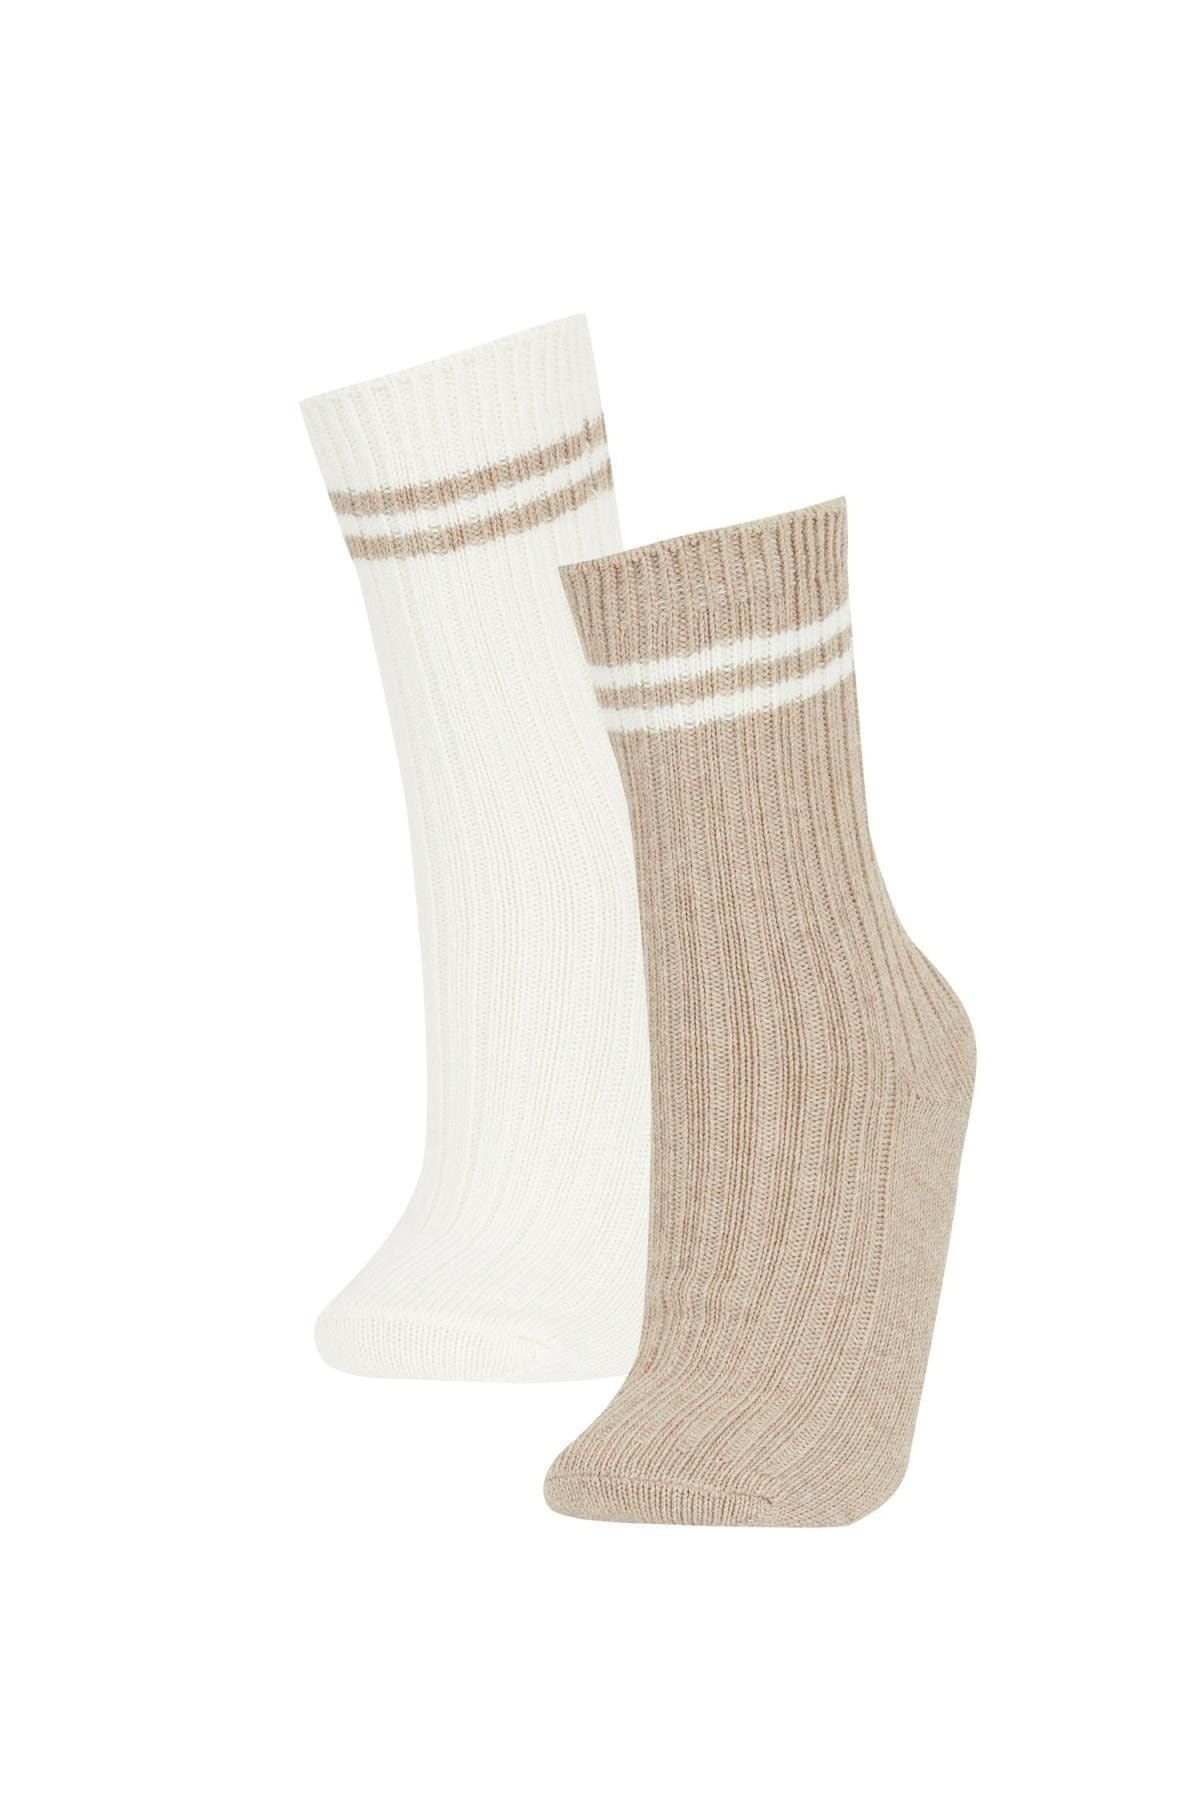 Defacto Kadın 2'li Pamuklu Kışlık Çorap Y7639azns